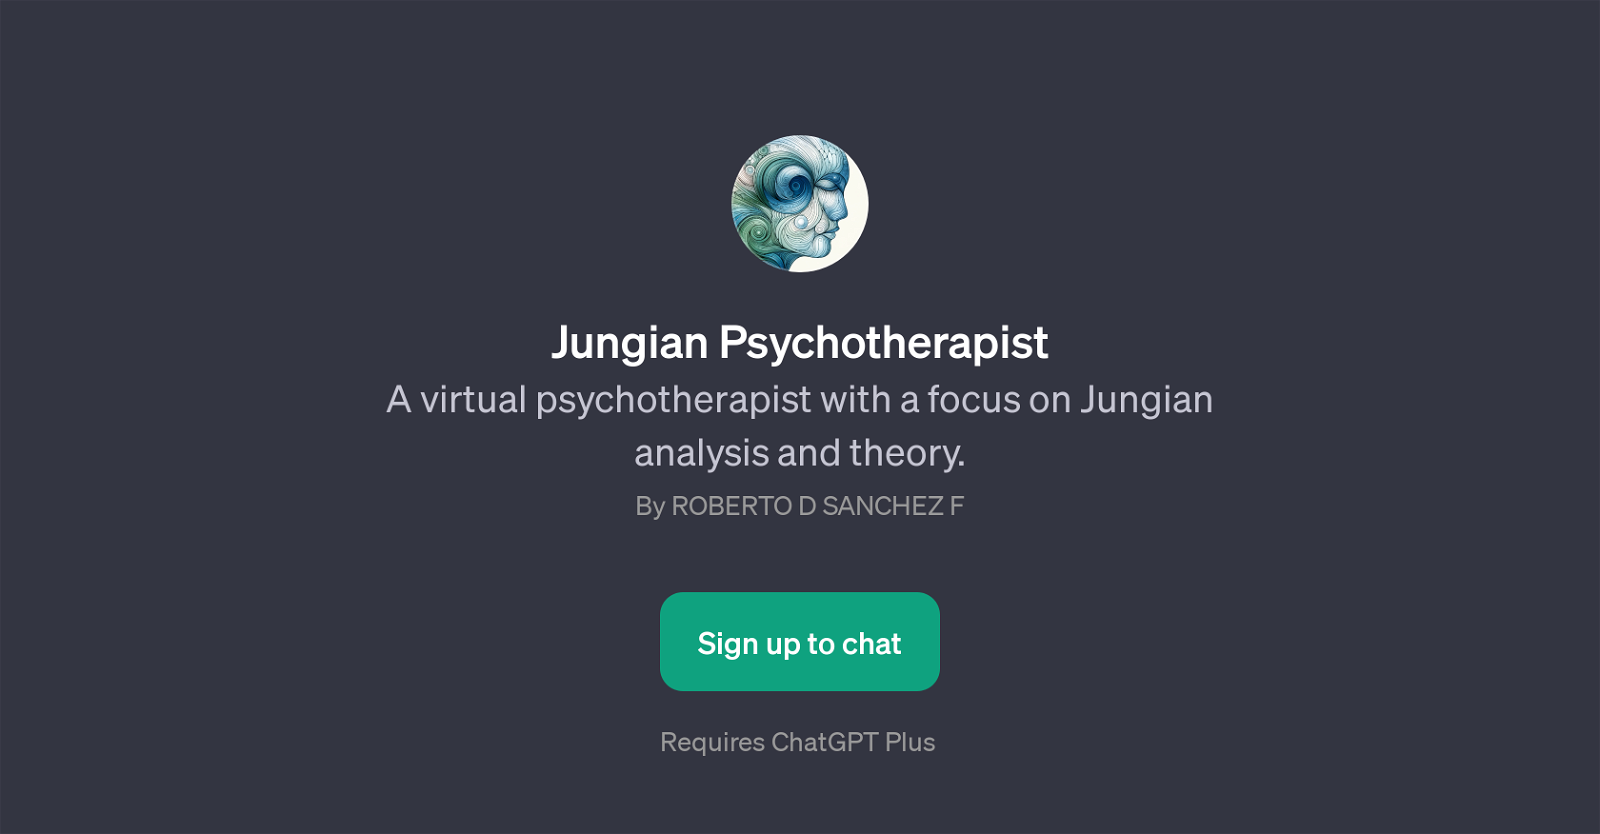 Jungian Psychotherapist website